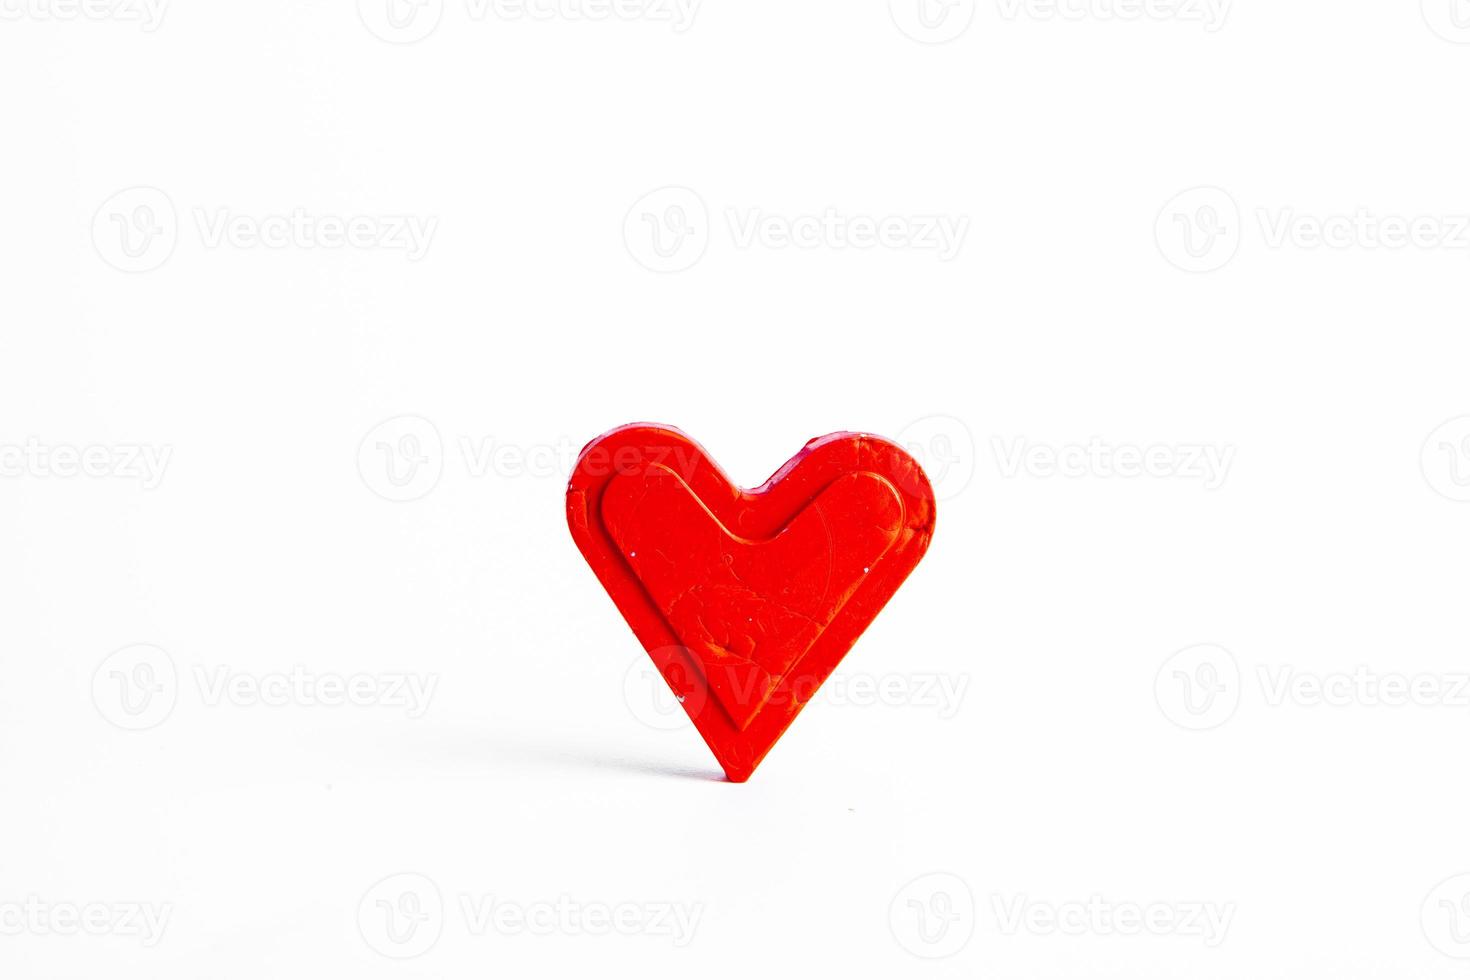 structuur met liefde harten voor ontwerp. valentijnsdag dag kaart concept. hart voor valentijnsdag dag groet kaart. liefde is. foto